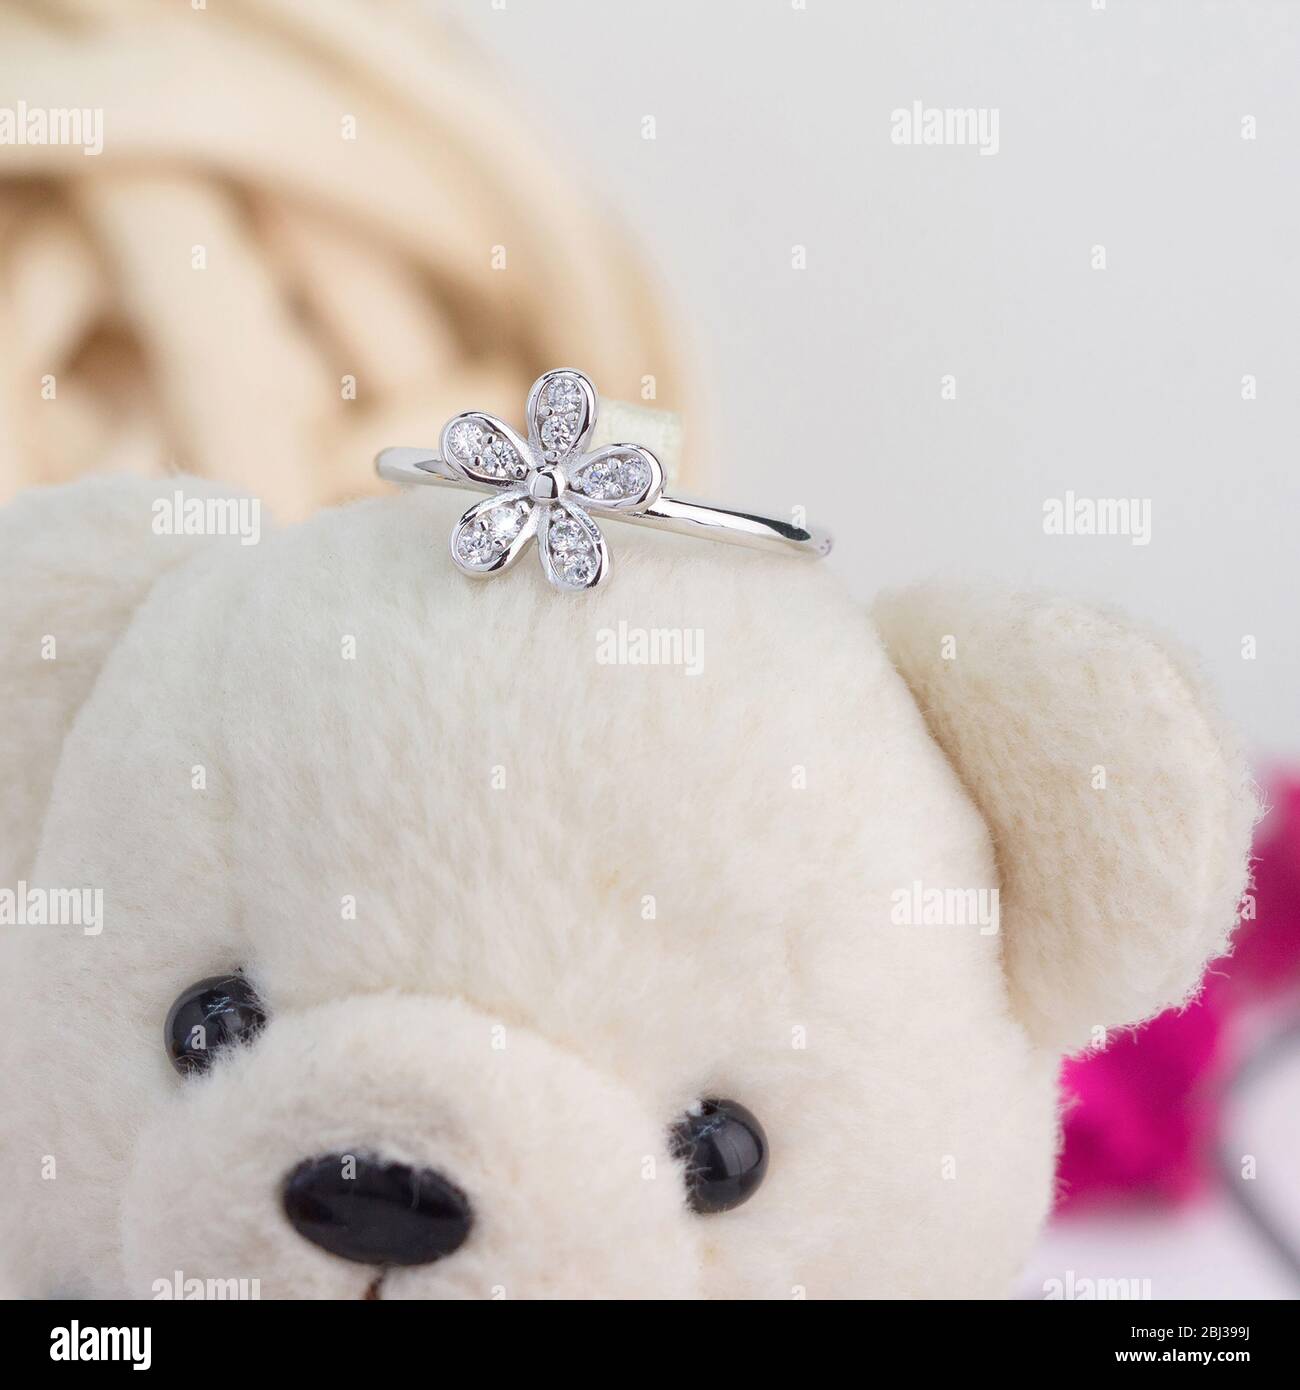 Joli anneau argent en forme de fleur décoré de diamants s'affichant sur un ours en peluche Banque D'Images